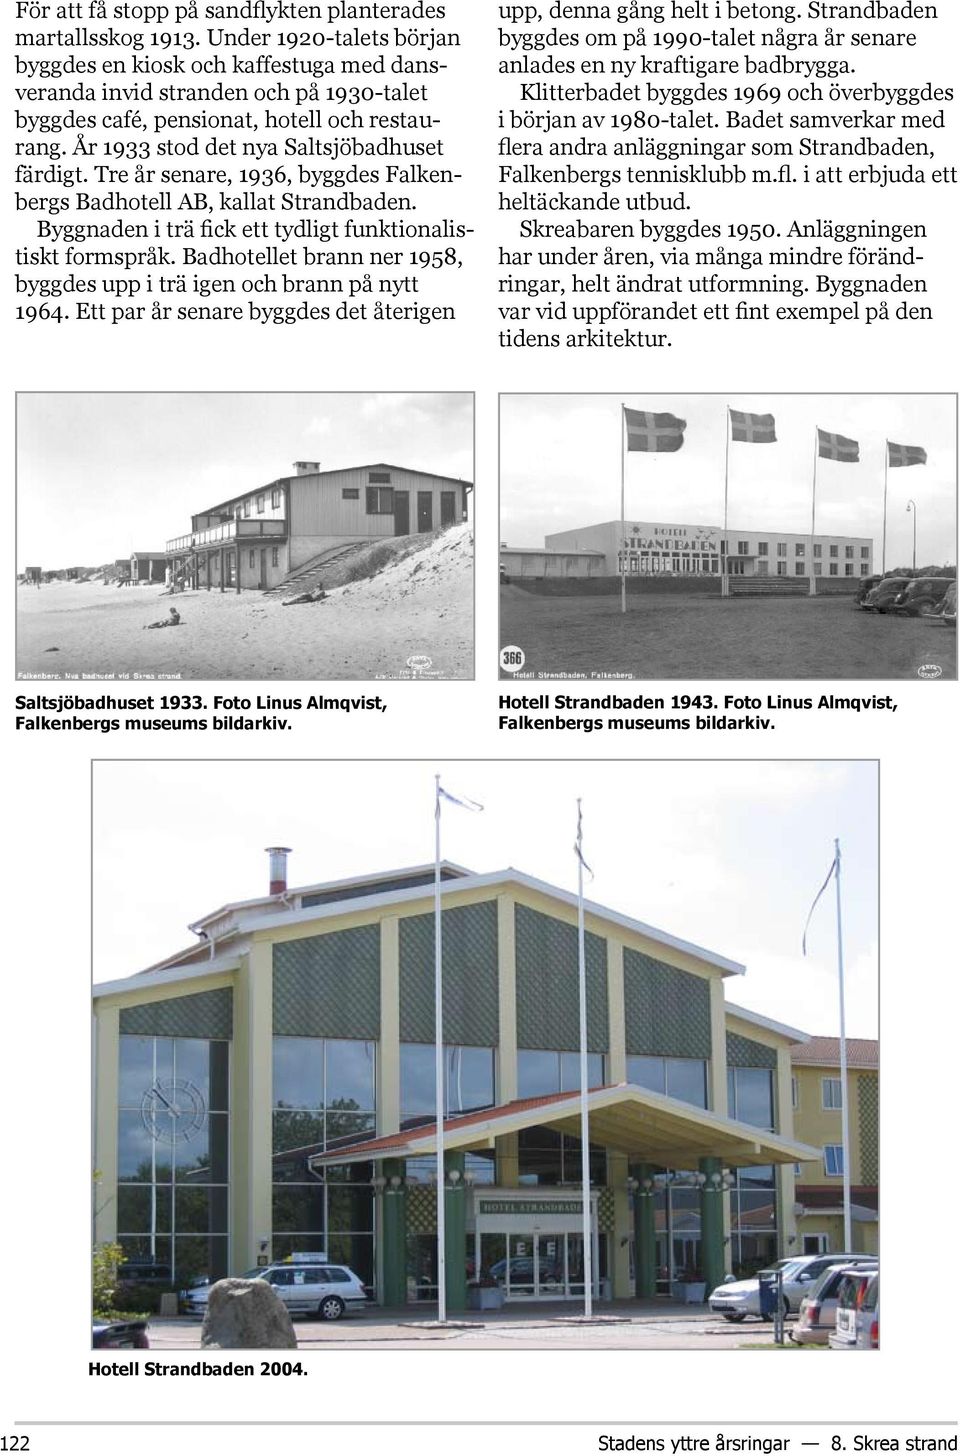 Tre år senare, 1936, byggdes Falkenbergs Badhotell AB, kallat Strandbaden. Byggnaden i trä fick ett tydligt funktionalistiskt formspråk.